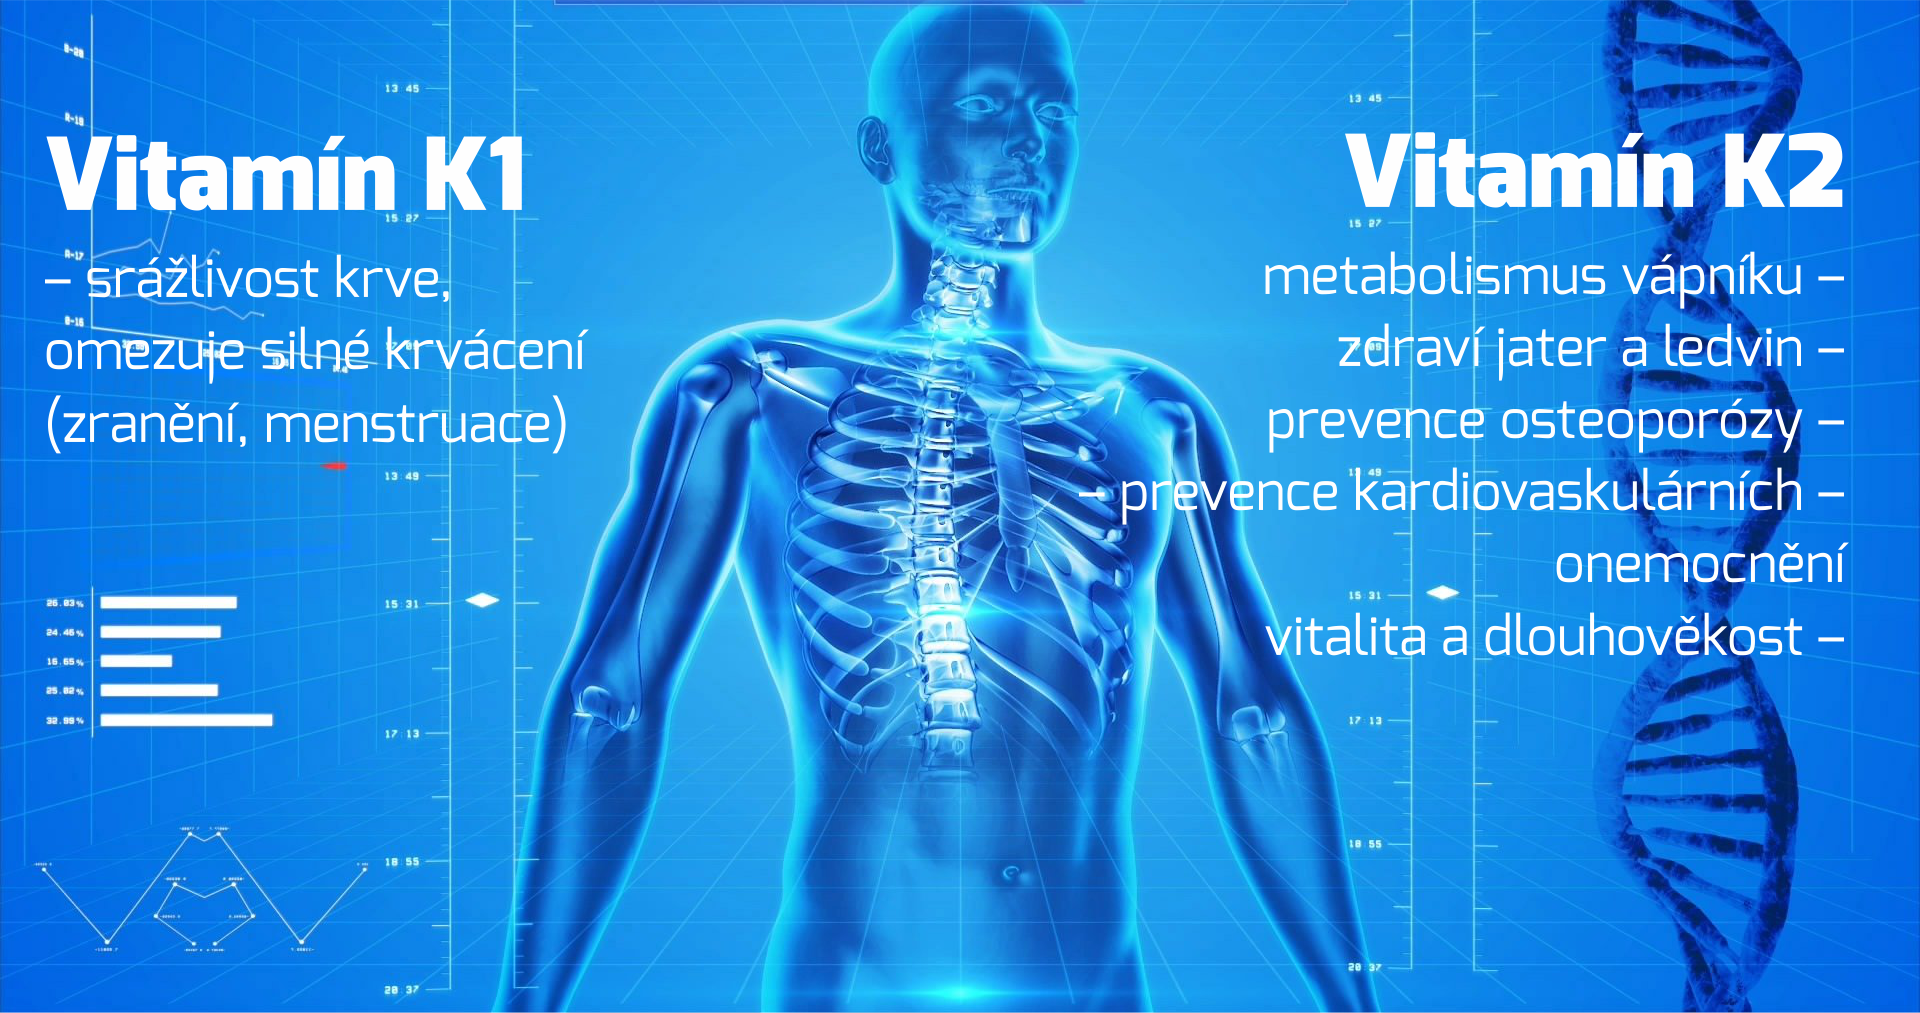 Vitamín K2 a vitamín K1 – jejich důležitost pro zdraví